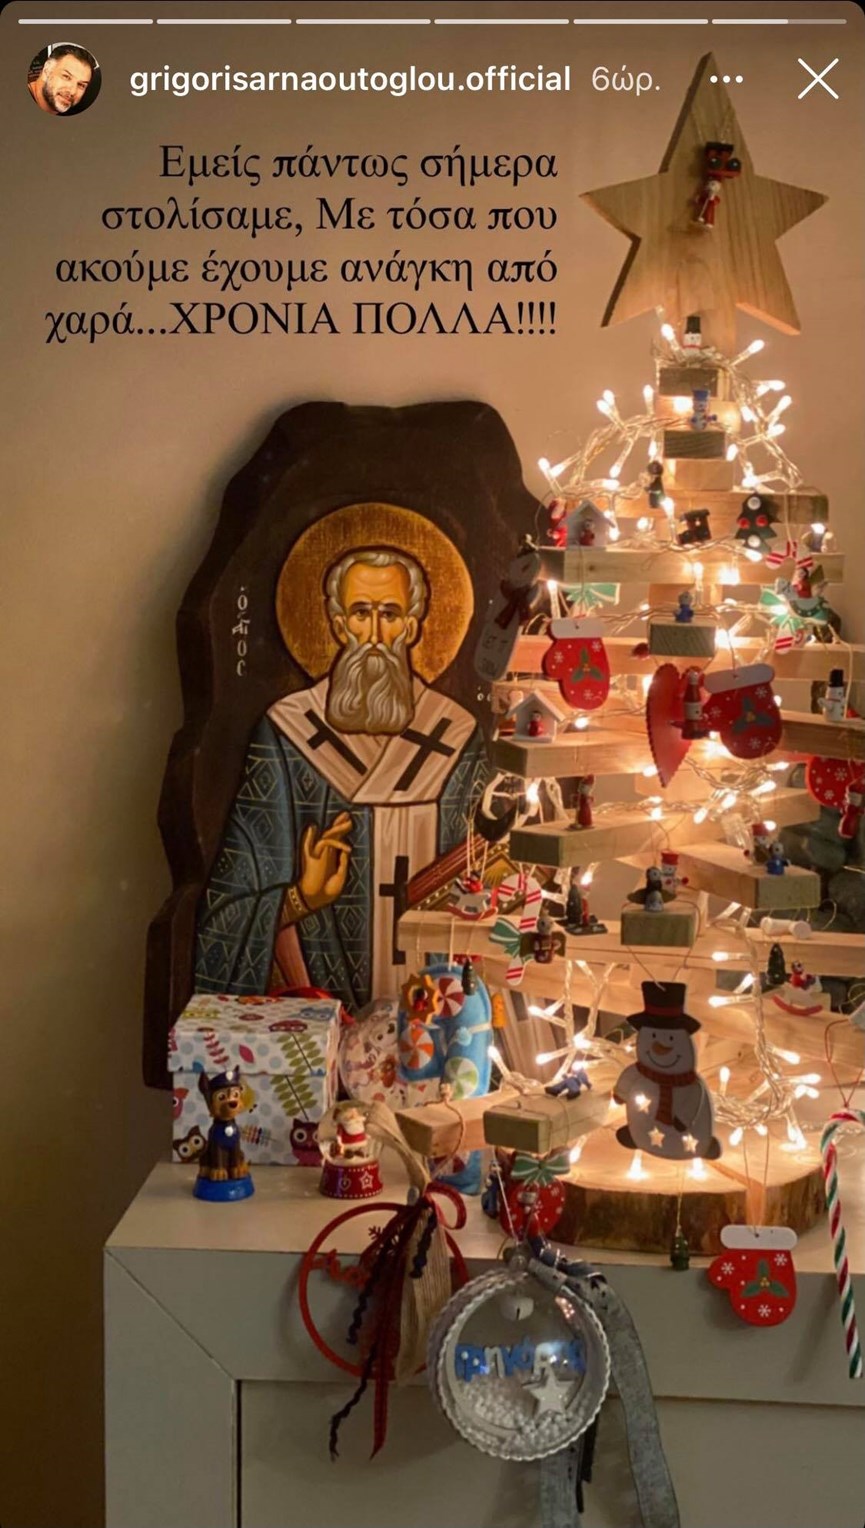 Ο Γρηγόρης Αρναούτογλου στόλισε για Χριστούγεννα- Το πανέμορφο και πρωτότυπο δέντρο του! (εικόνα)